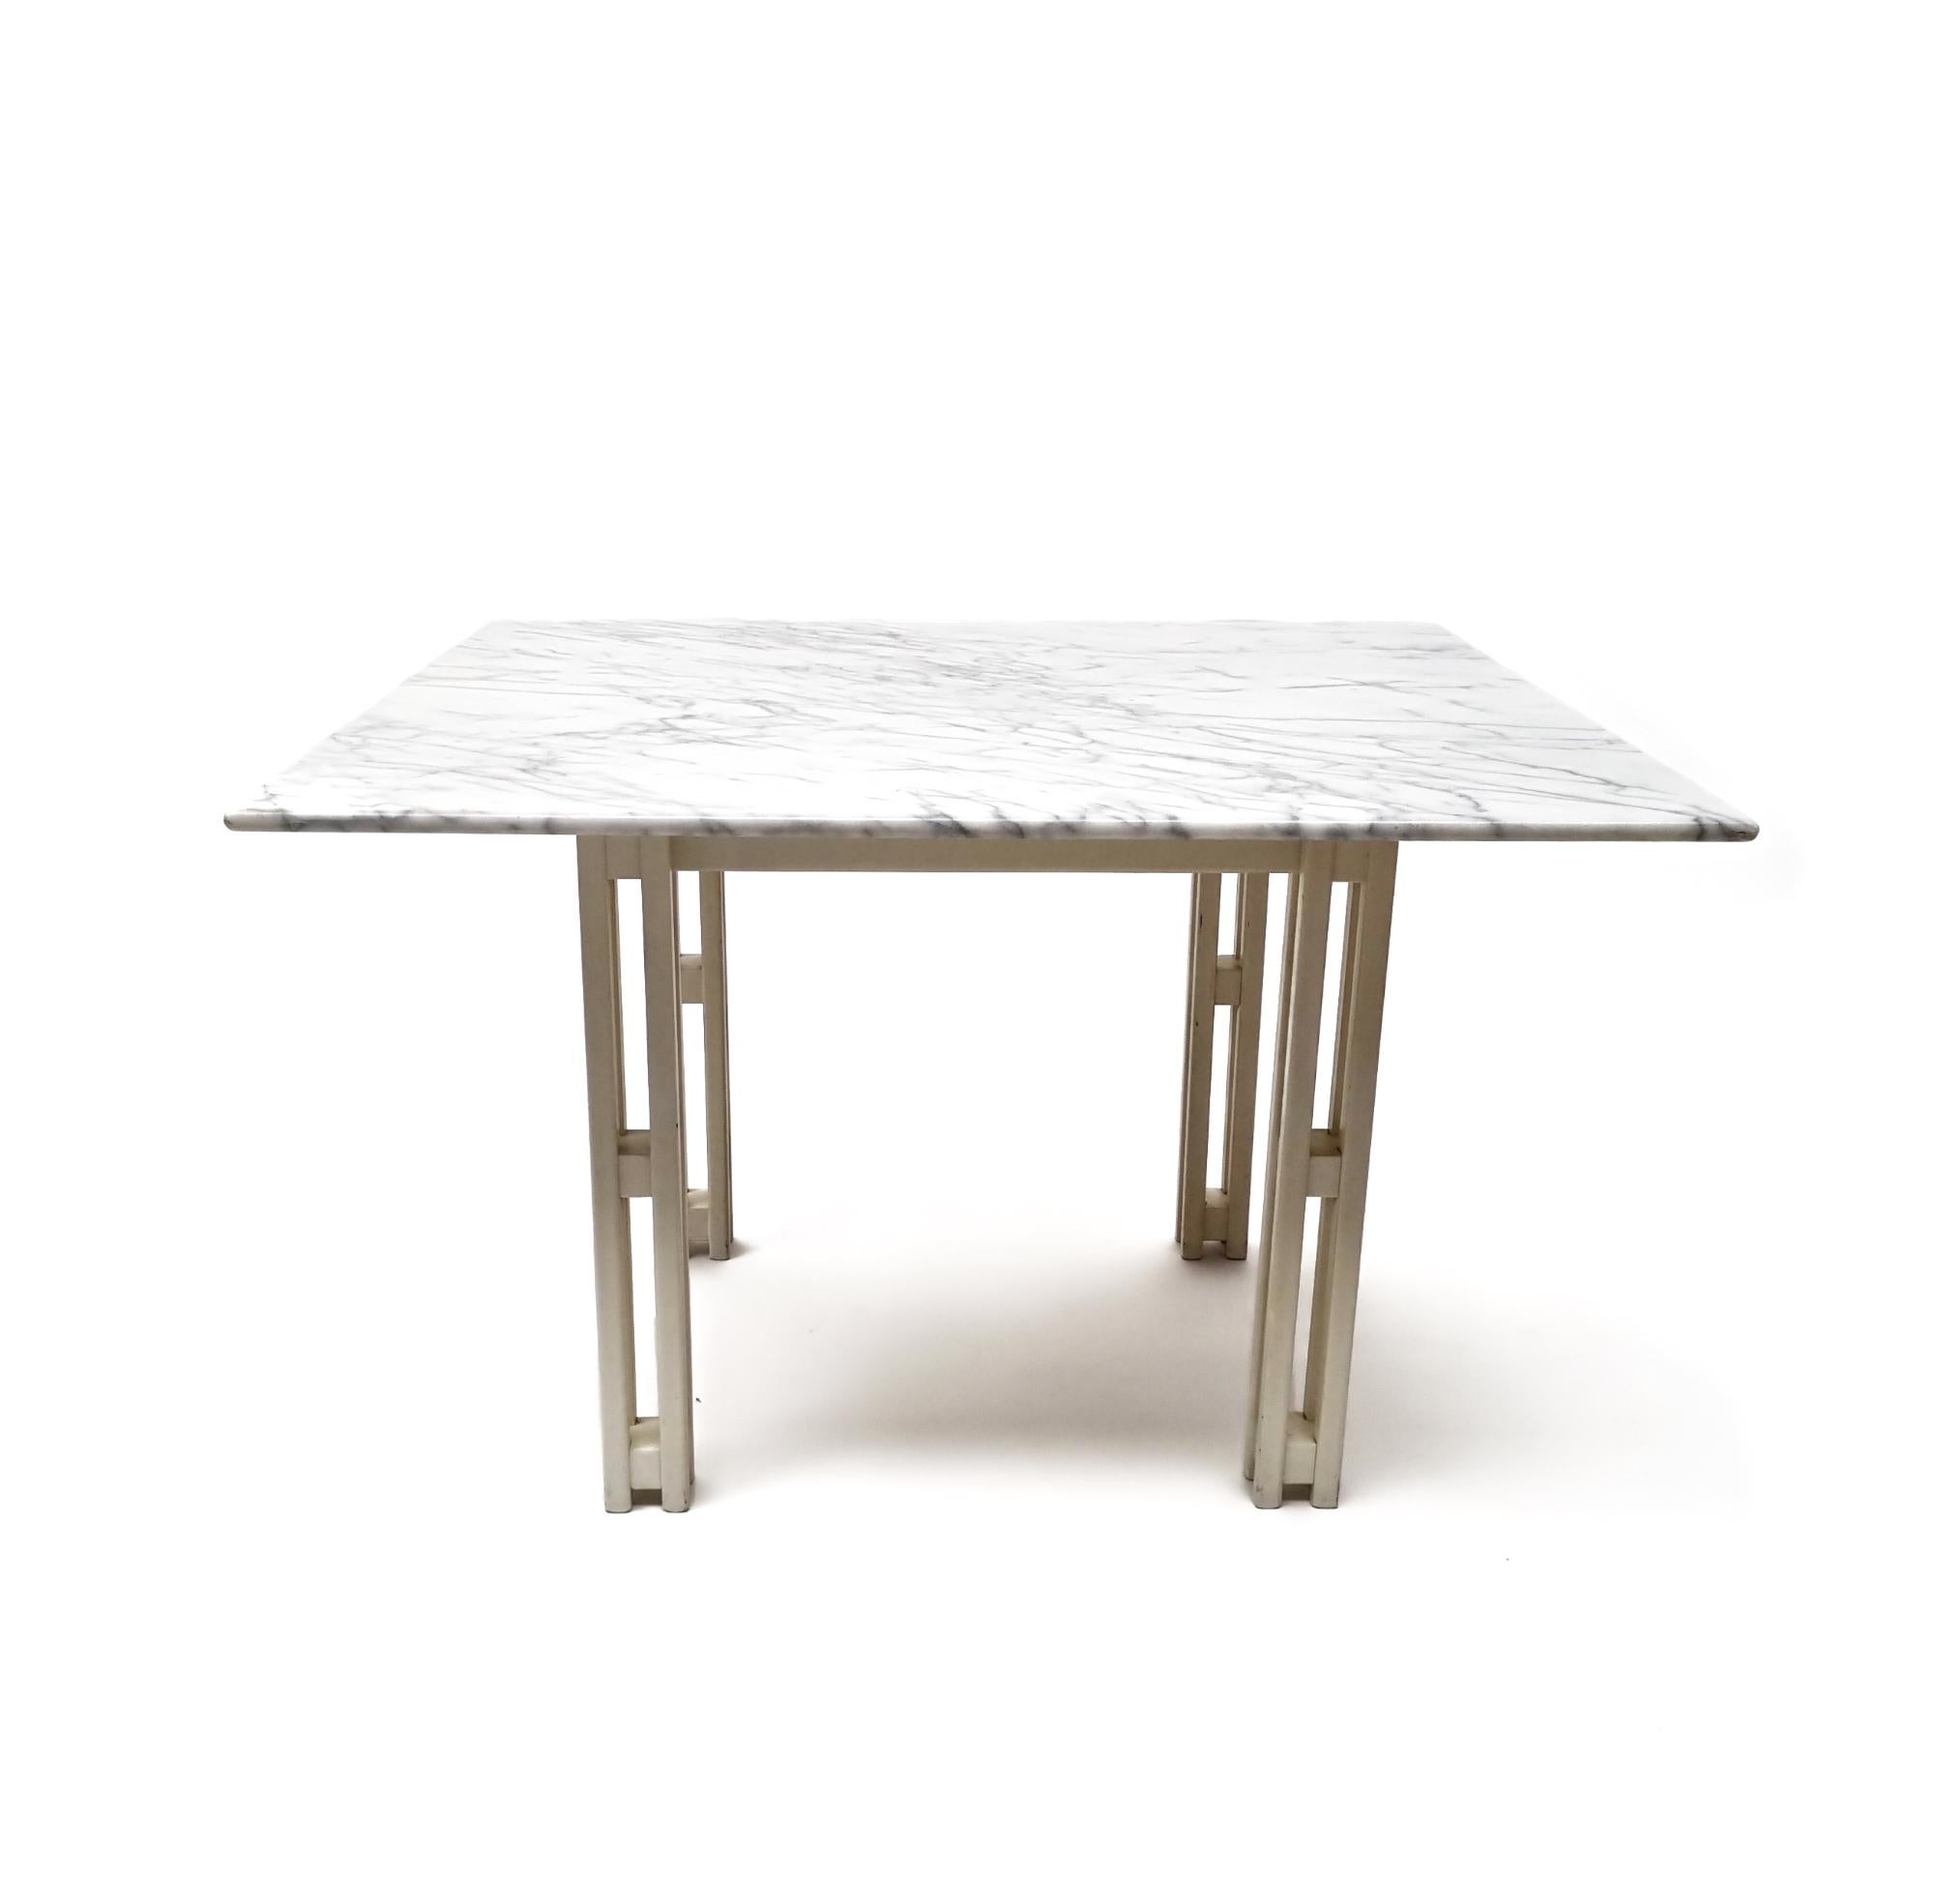 Cette table de salle à manger en marbre italien et bois de hêtre rehausse votre expérience culinaire !

L'élégance de son design carré est complétée par un plateau en marbre de Carrare magnifiquement flammé, tandis que les pieds en hêtre blanc